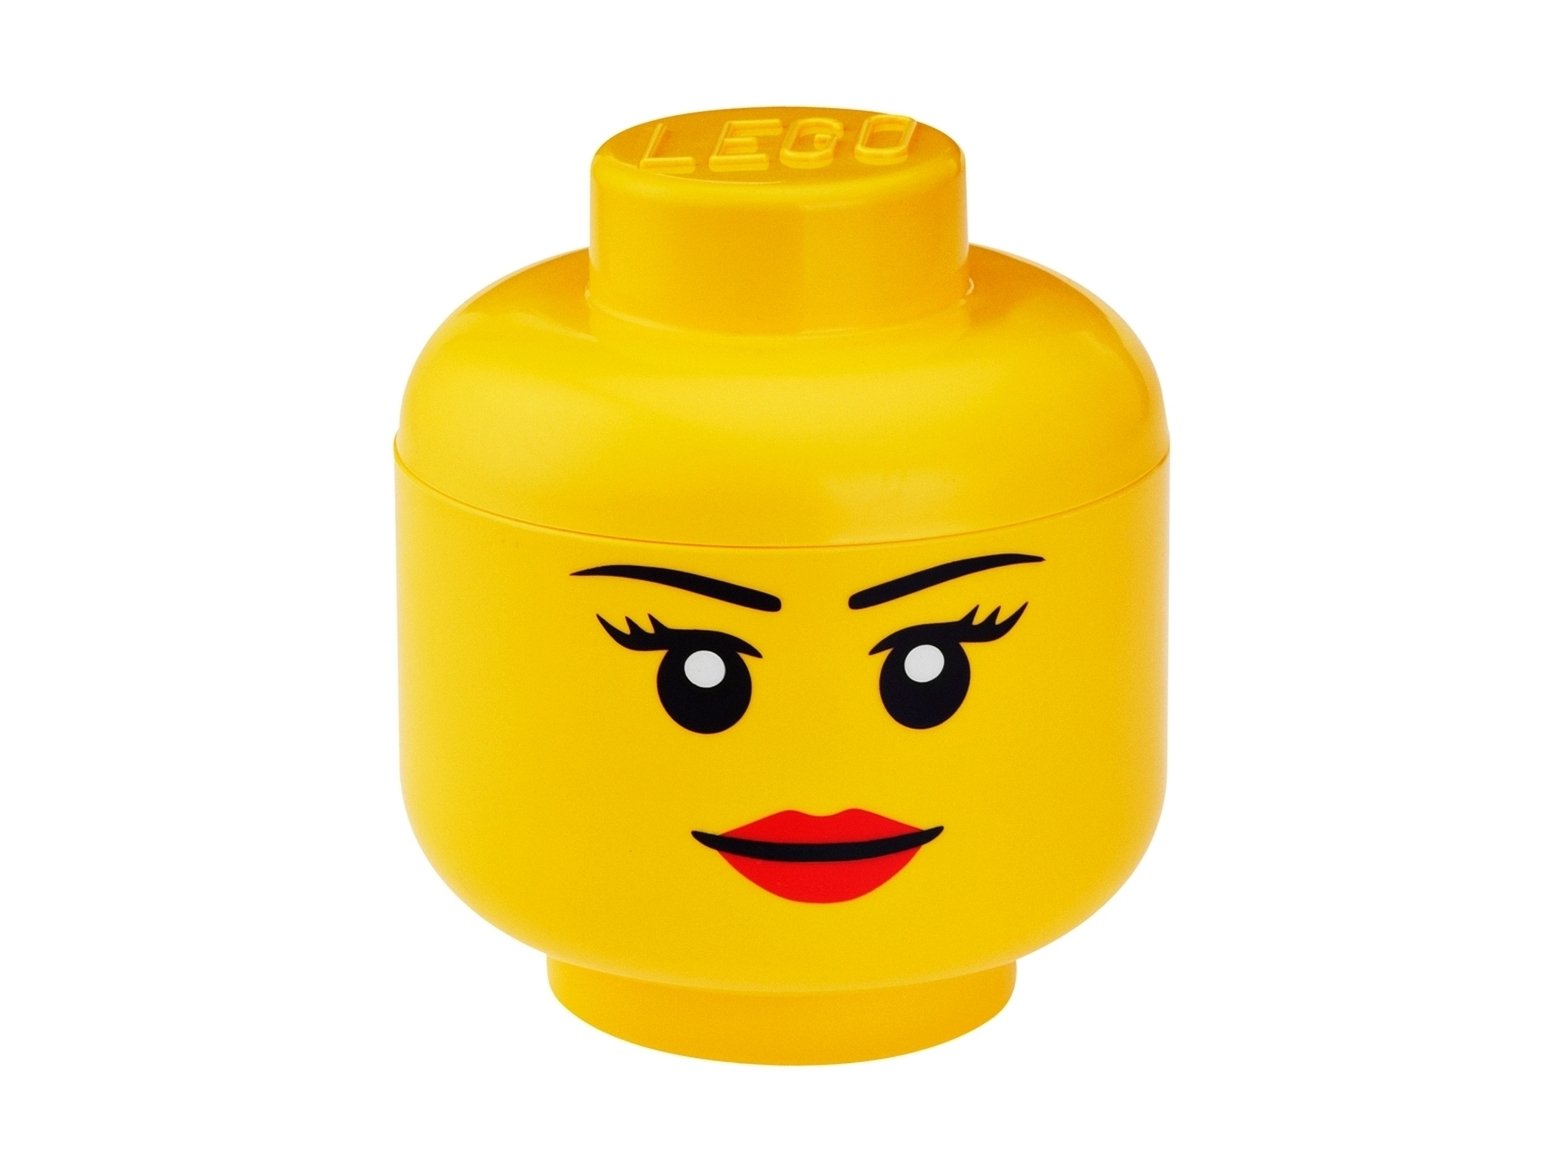 LEGO Pojemnik w kształcie głowy minifigurki – duży, dziewczynka 5006147